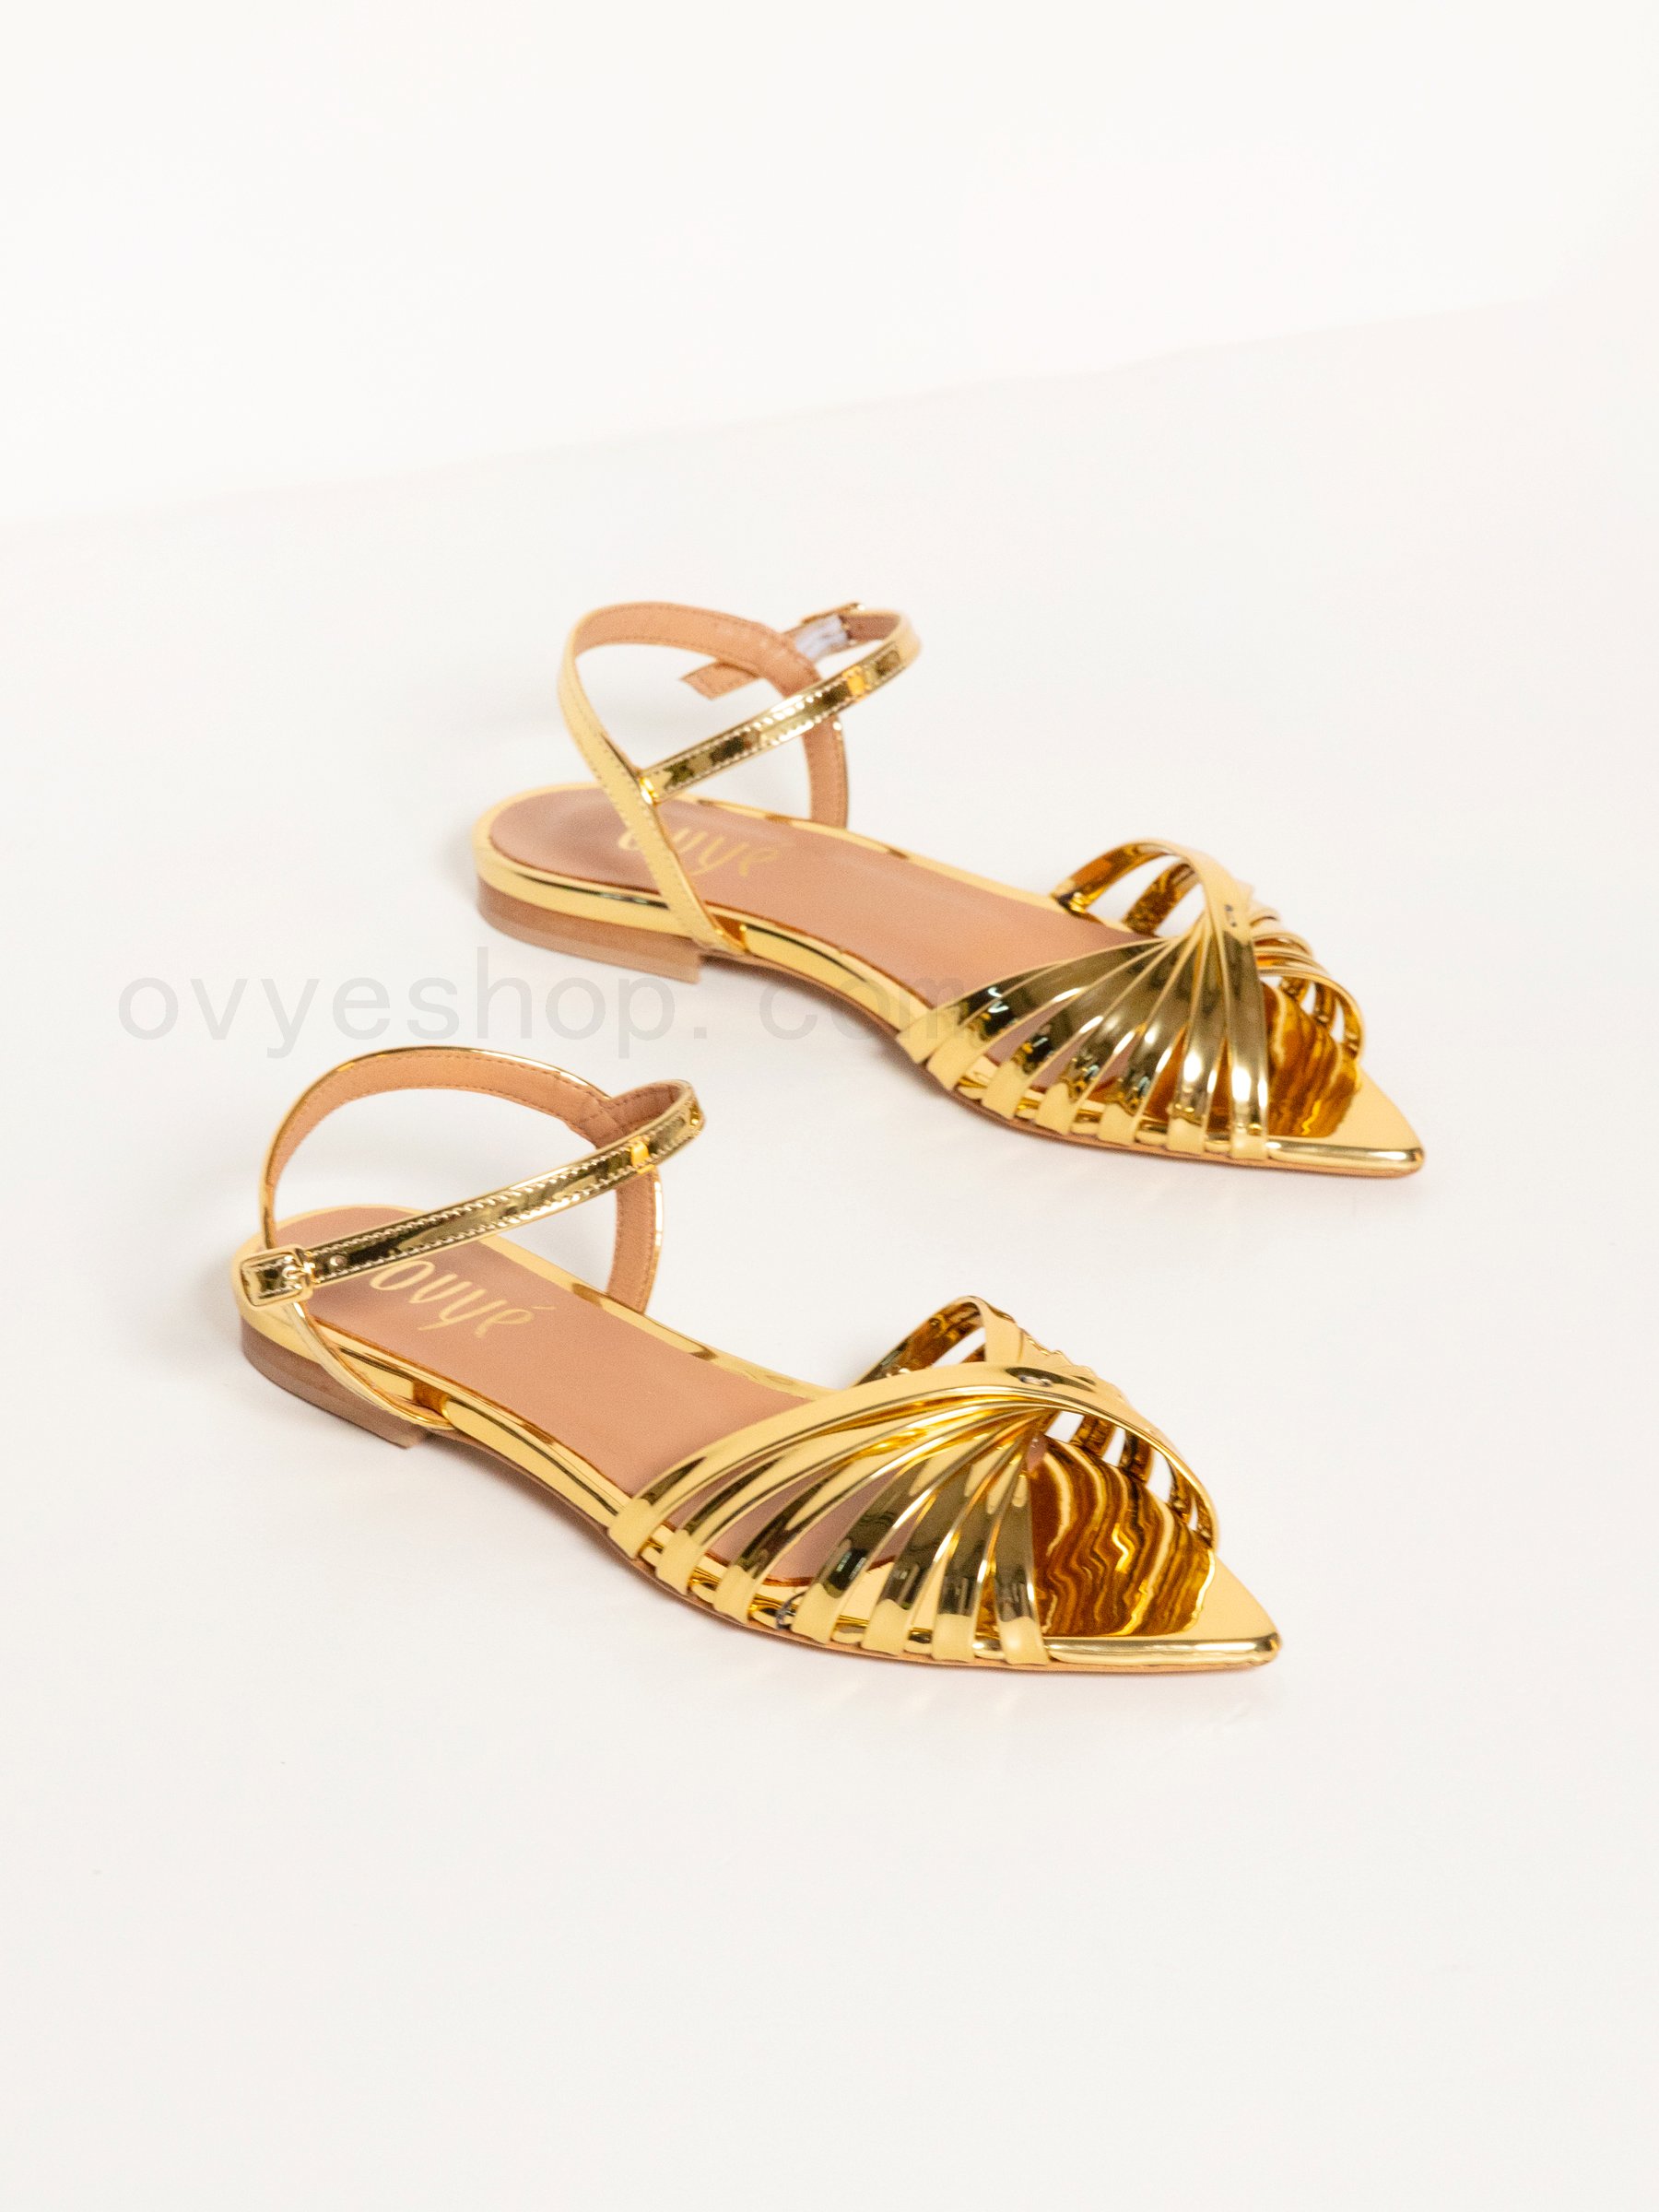 Acquista Mirror Sandal Gold Color F0817885-0588 85% Codice Sconto